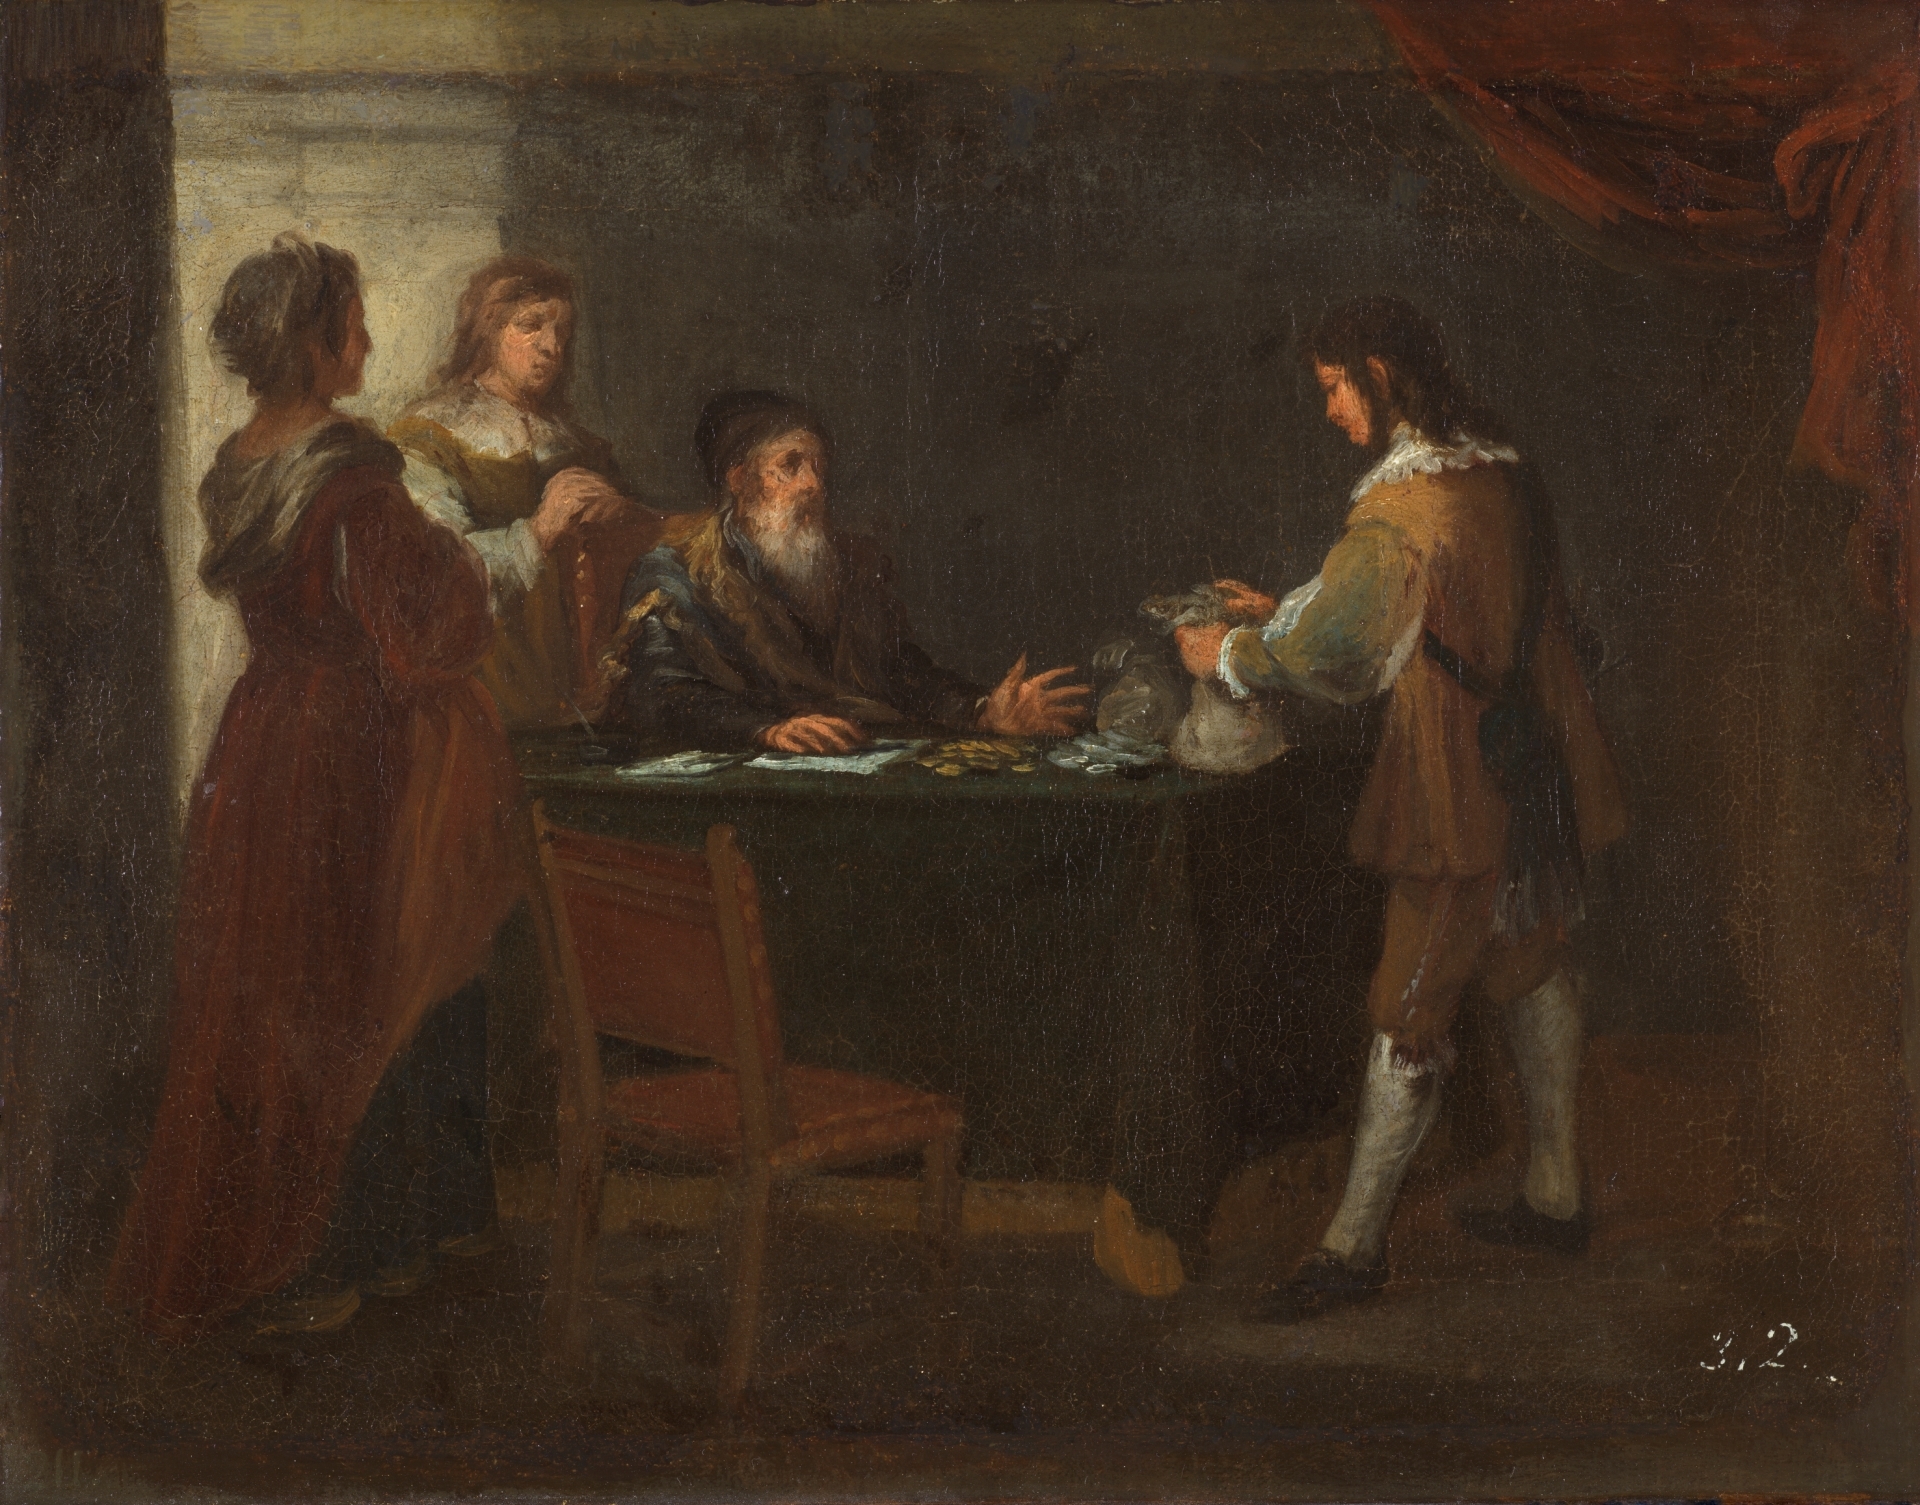 El hijo pródigo recoge su legítima - Colección - Museo Nacional del Prado